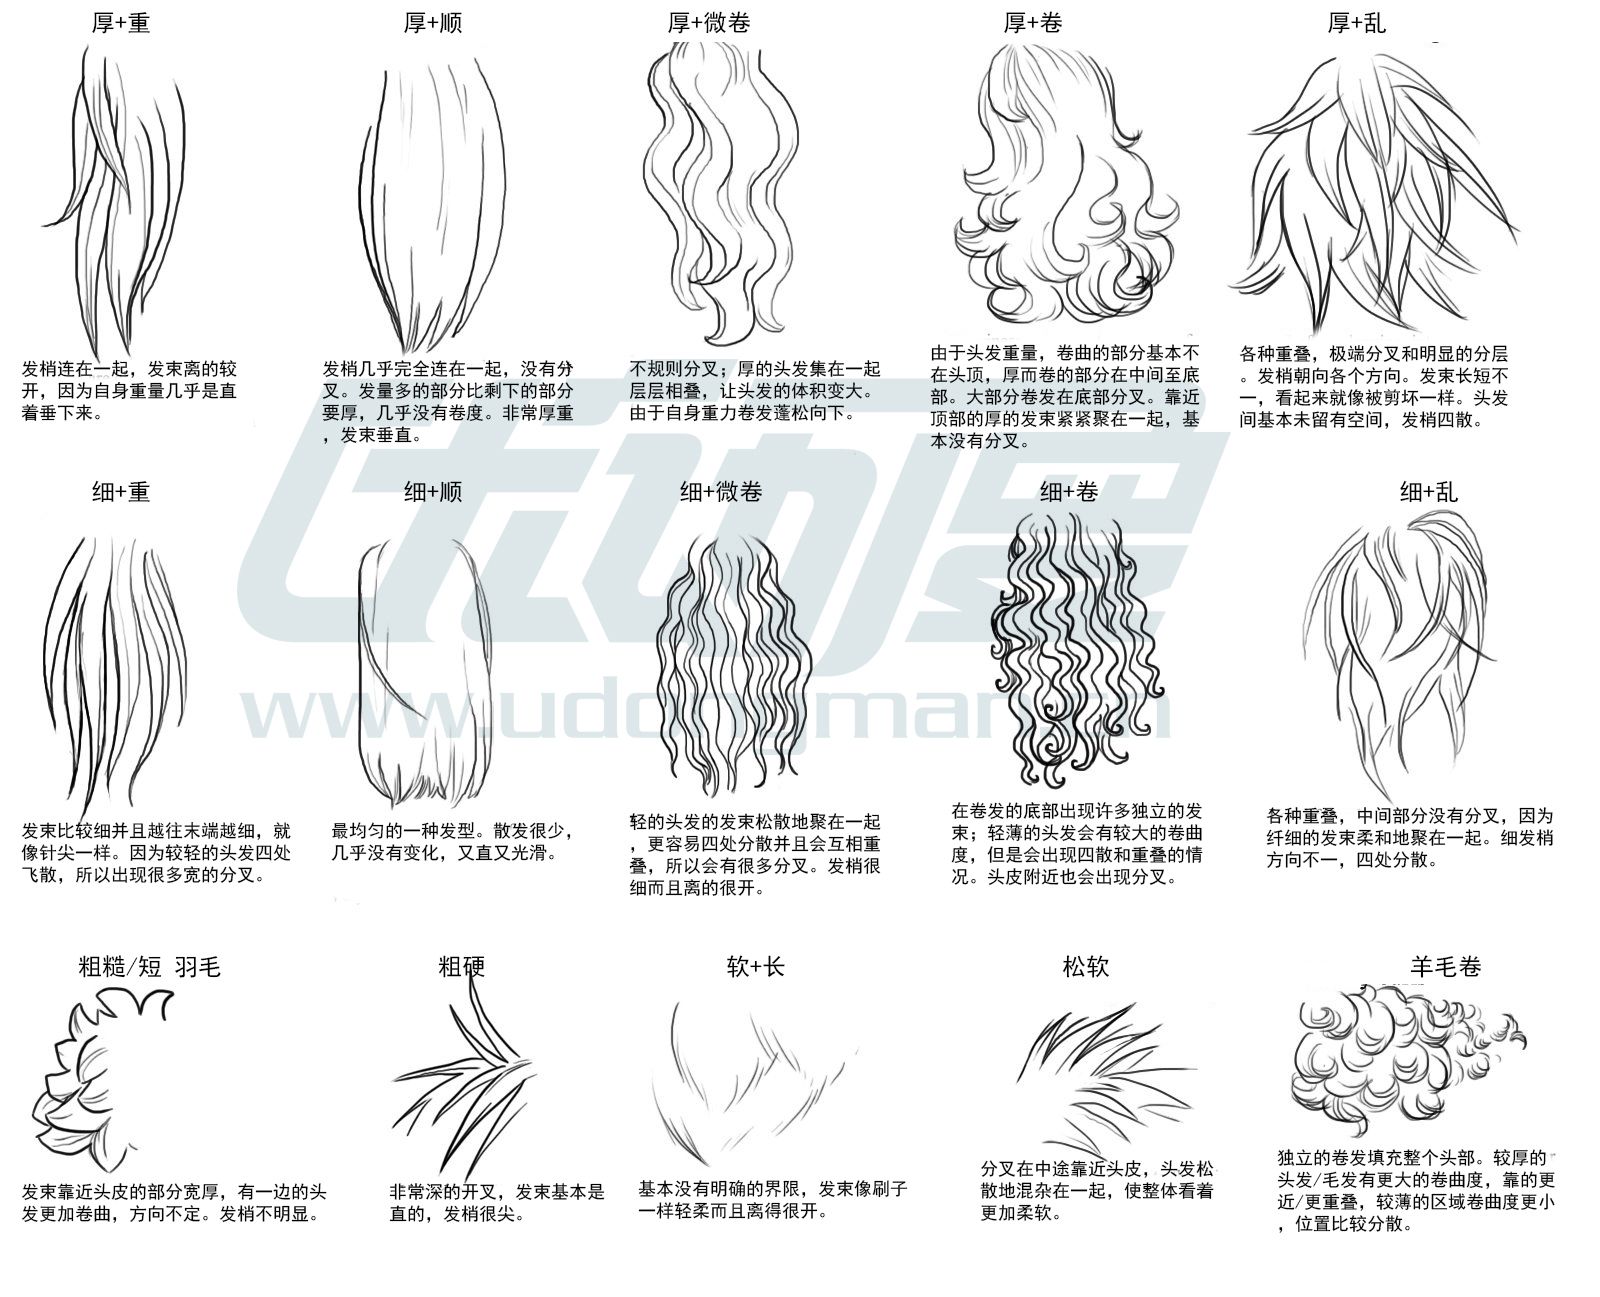 几款复杂发型的画法,教你怎么画出不同发质的头发